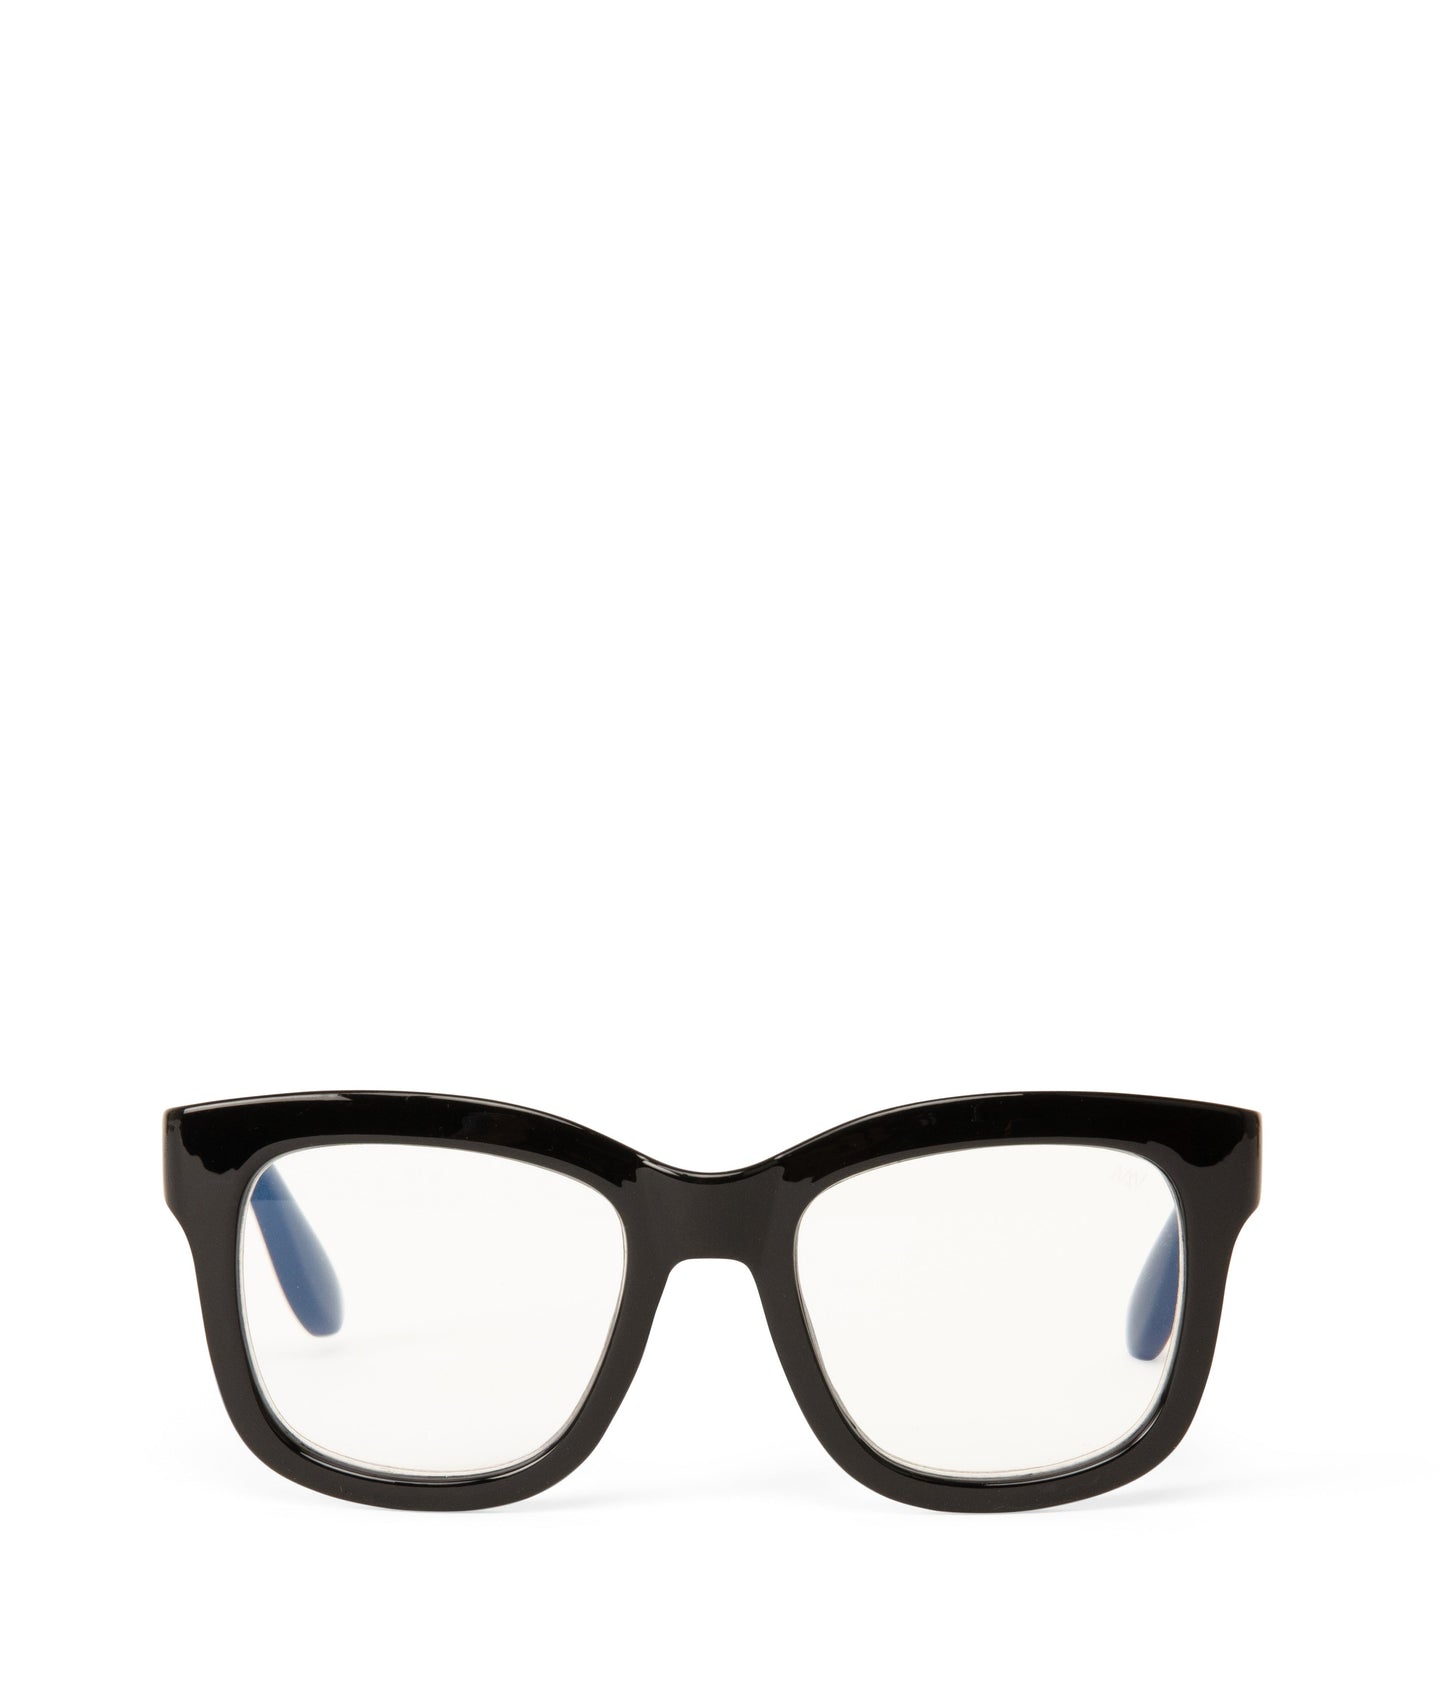 CHARLET-3 Recycled Wayfarer Reading Glasses | Color: Black - variant::black